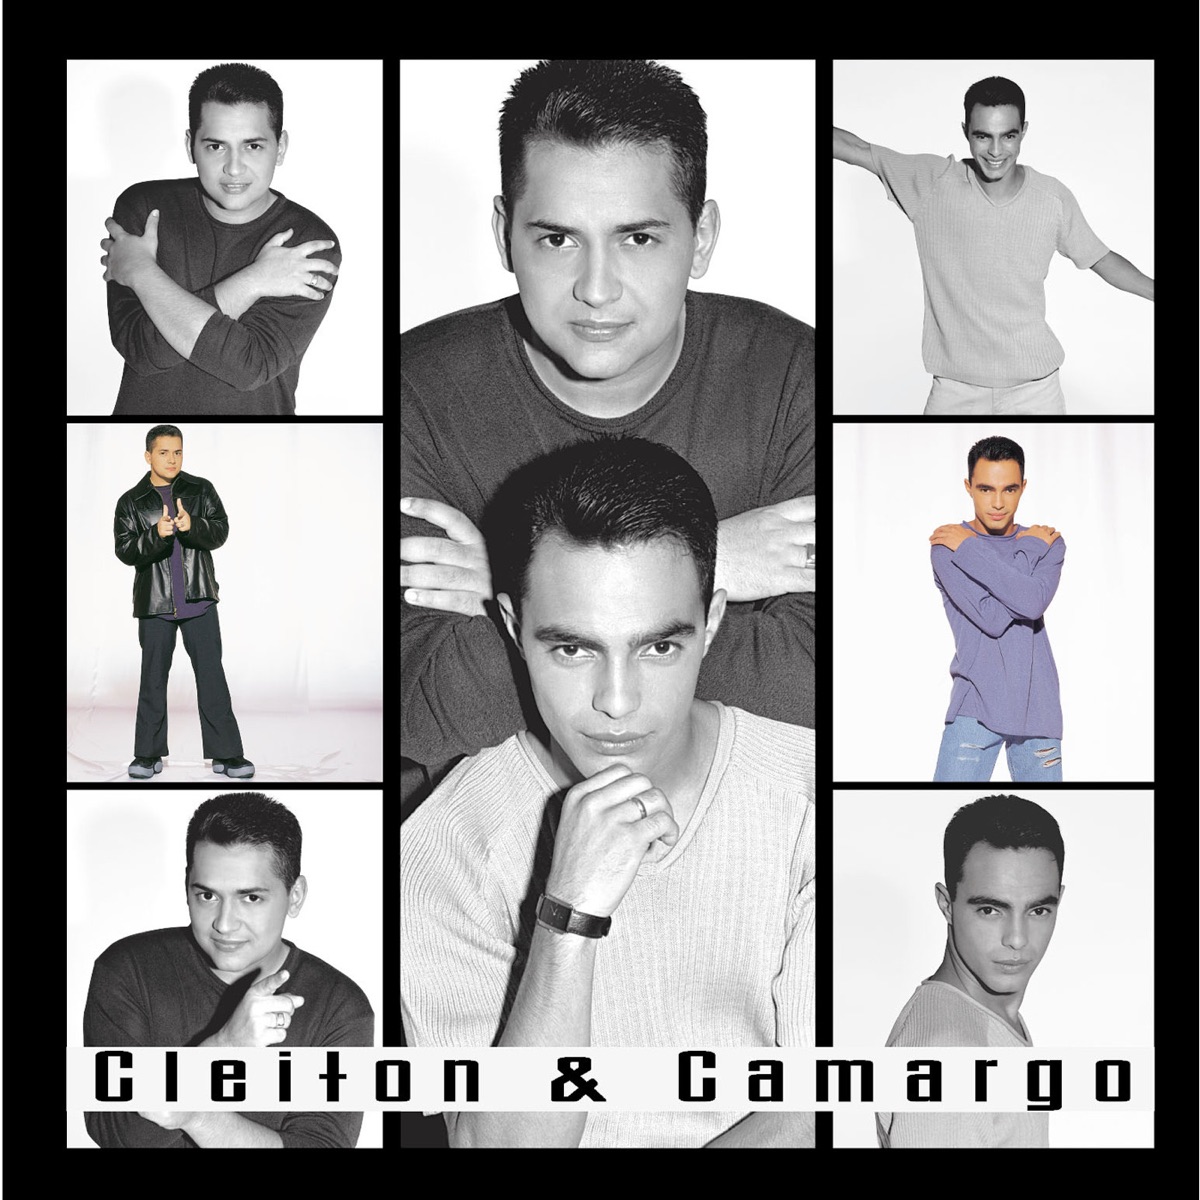 Cleiton & Camargo - Apple Music